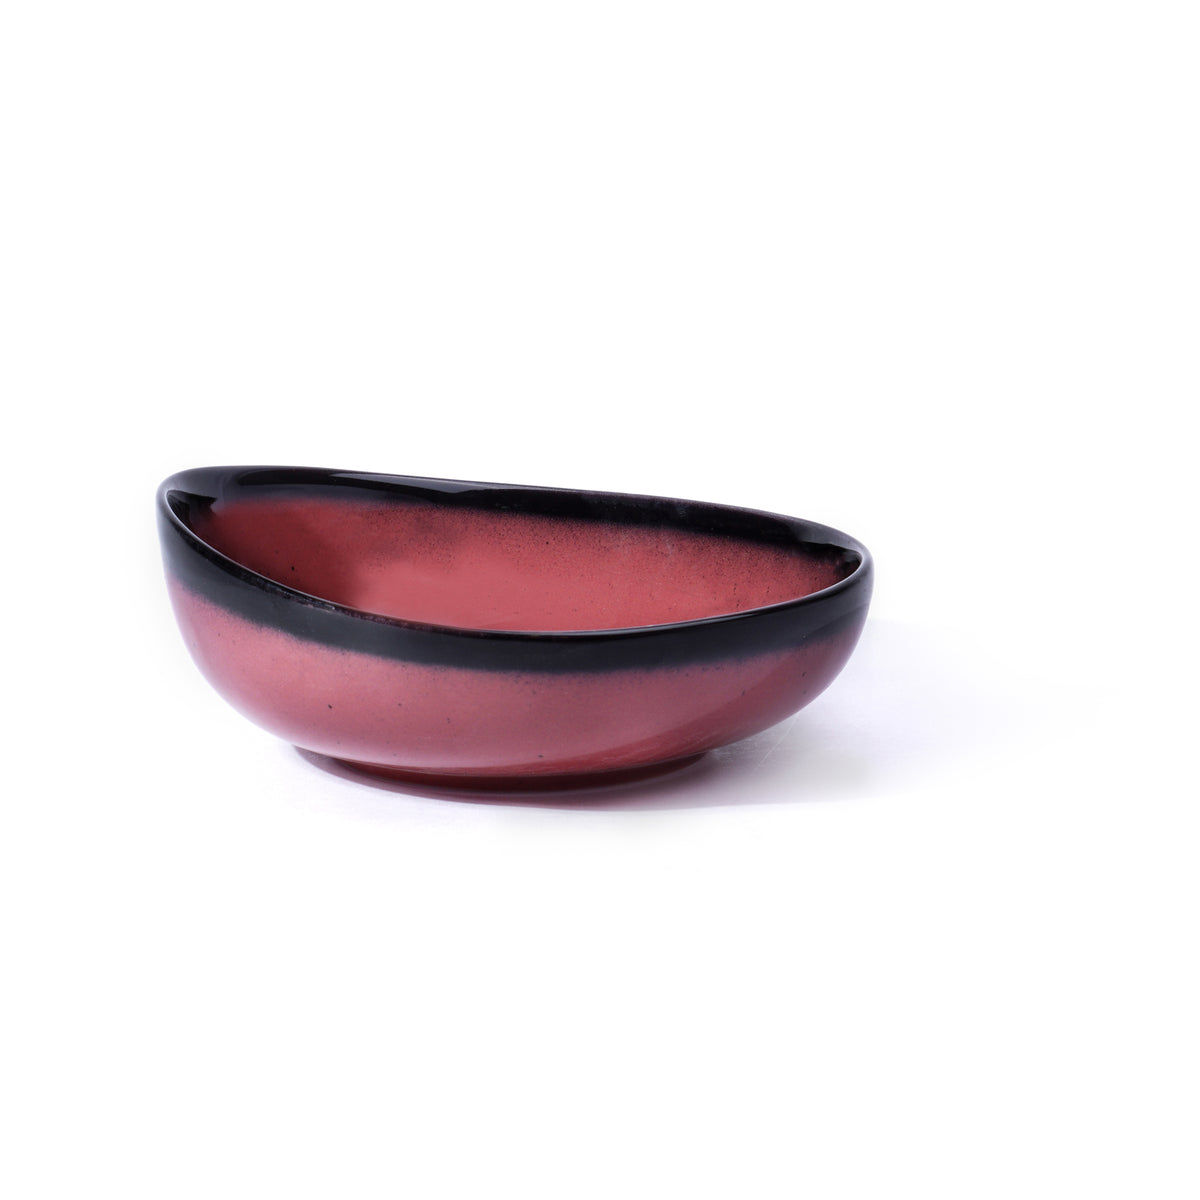 Shay Fine Porcelain Large Serving Bowl 1160ml, 1 Piece, Violet Pink